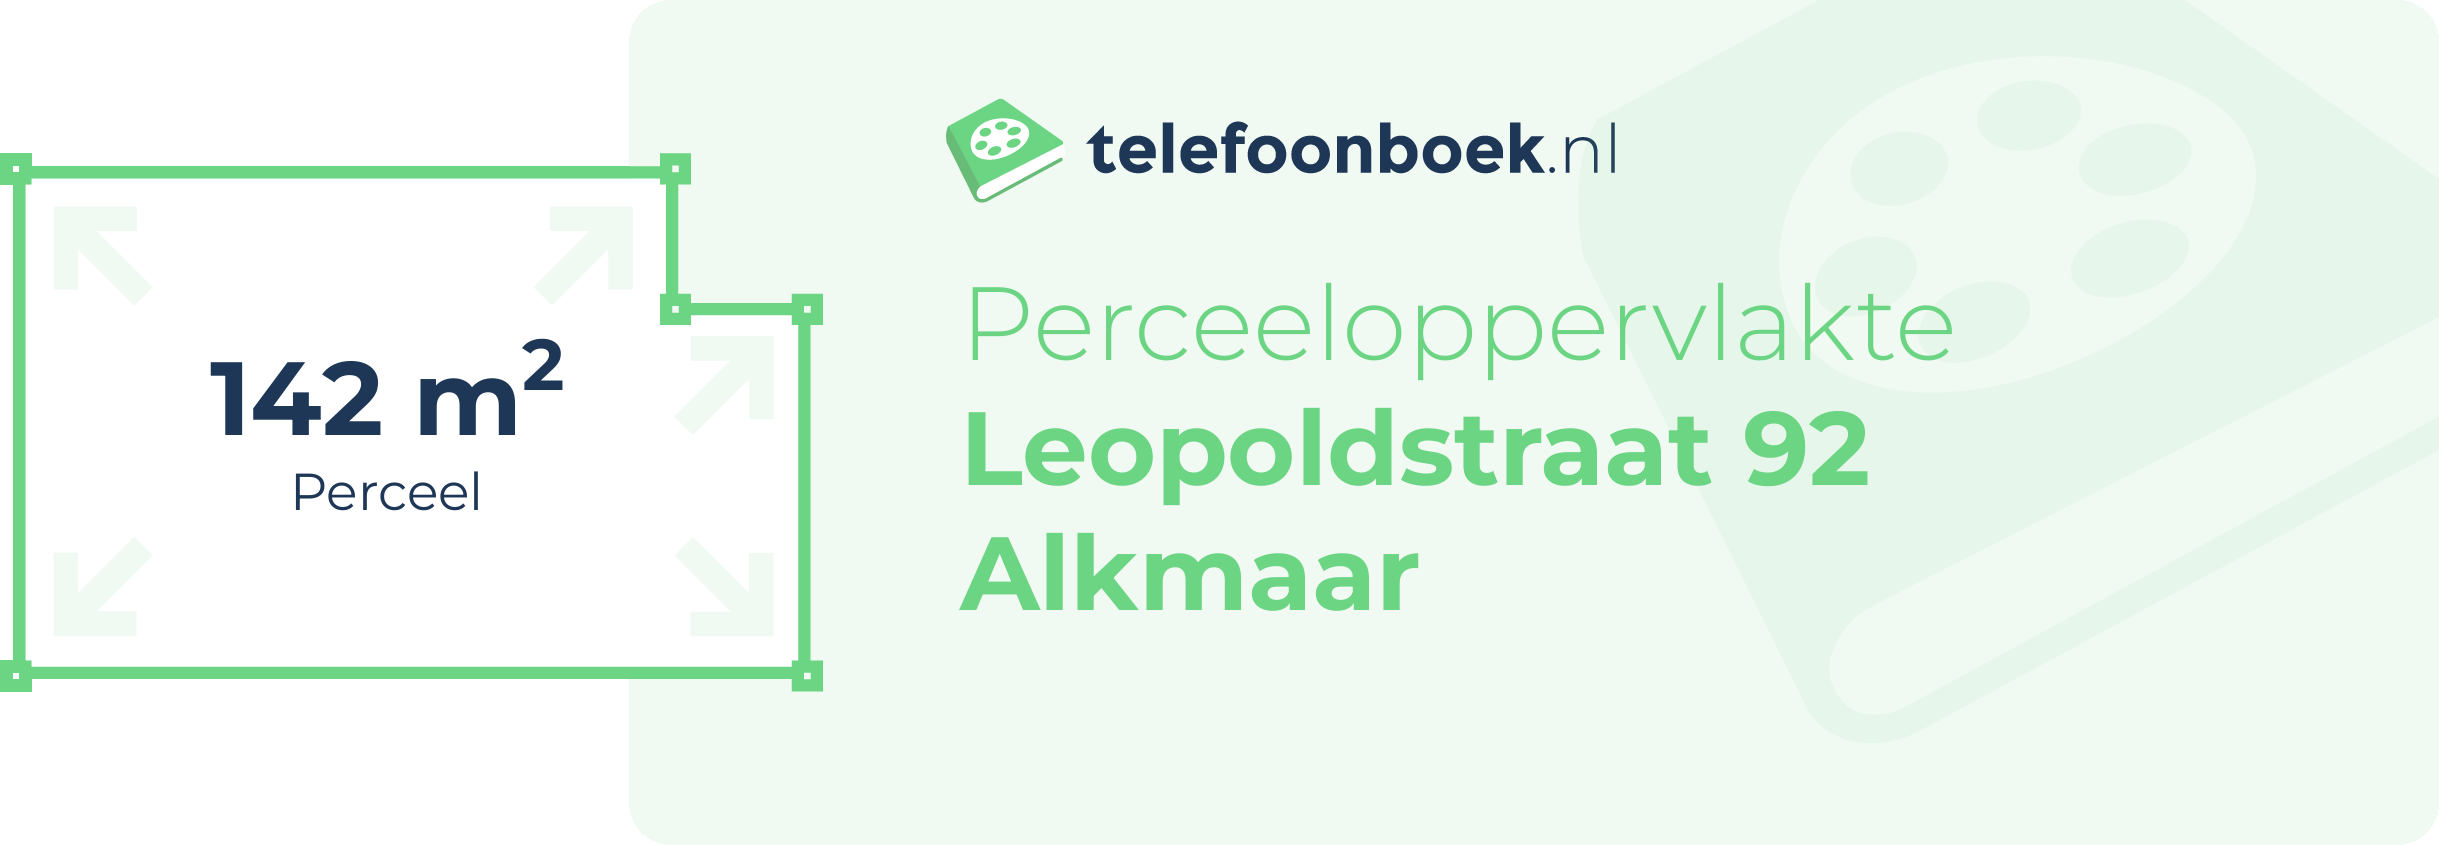 Perceeloppervlakte Leopoldstraat 92 Alkmaar